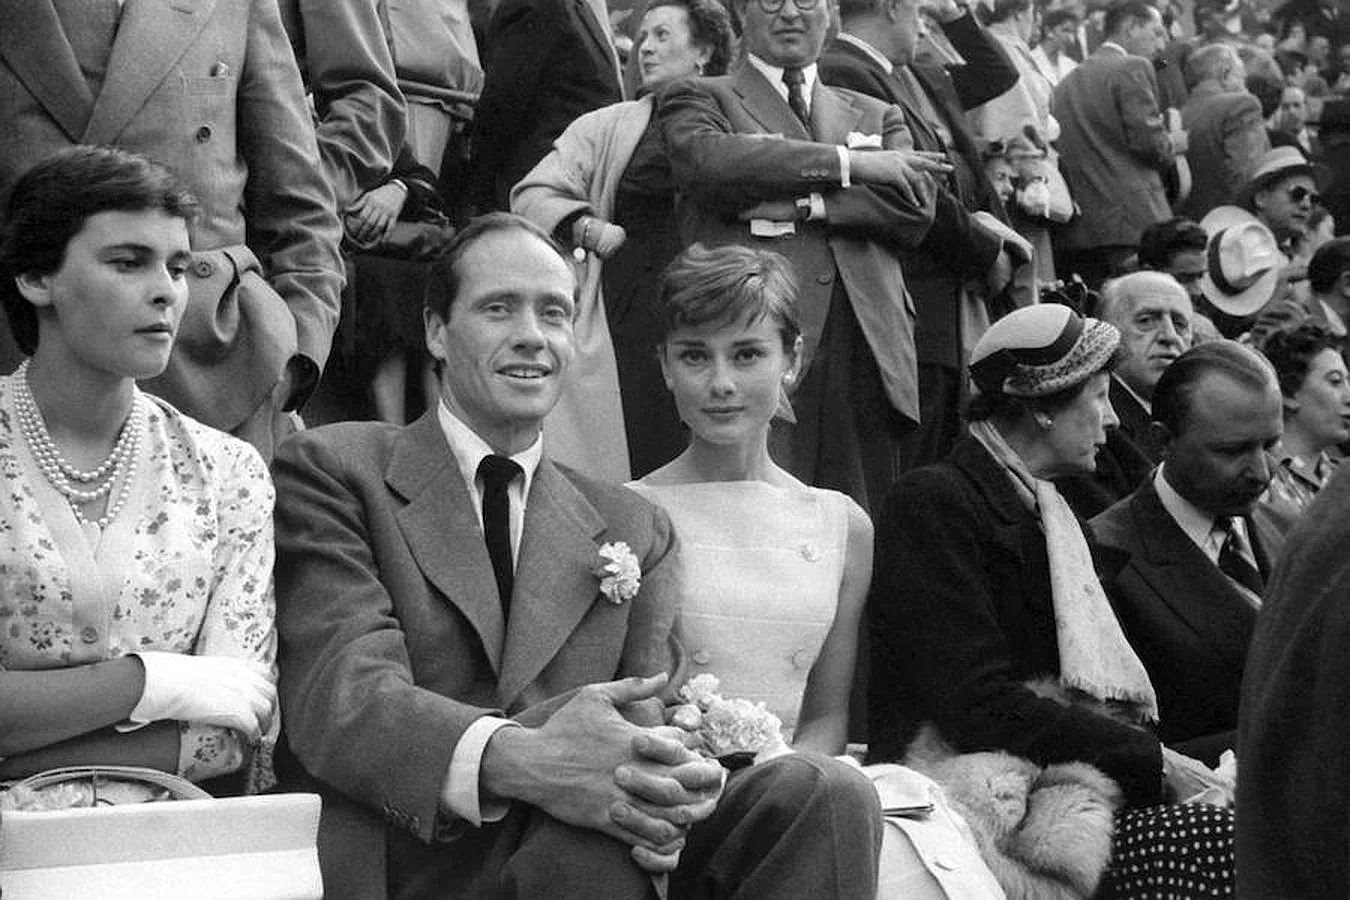 En una de sus visitas a nuestro país, la actriz visitó la Plaza de toros de las Ventas junto a su primer marido Mel Ferrer